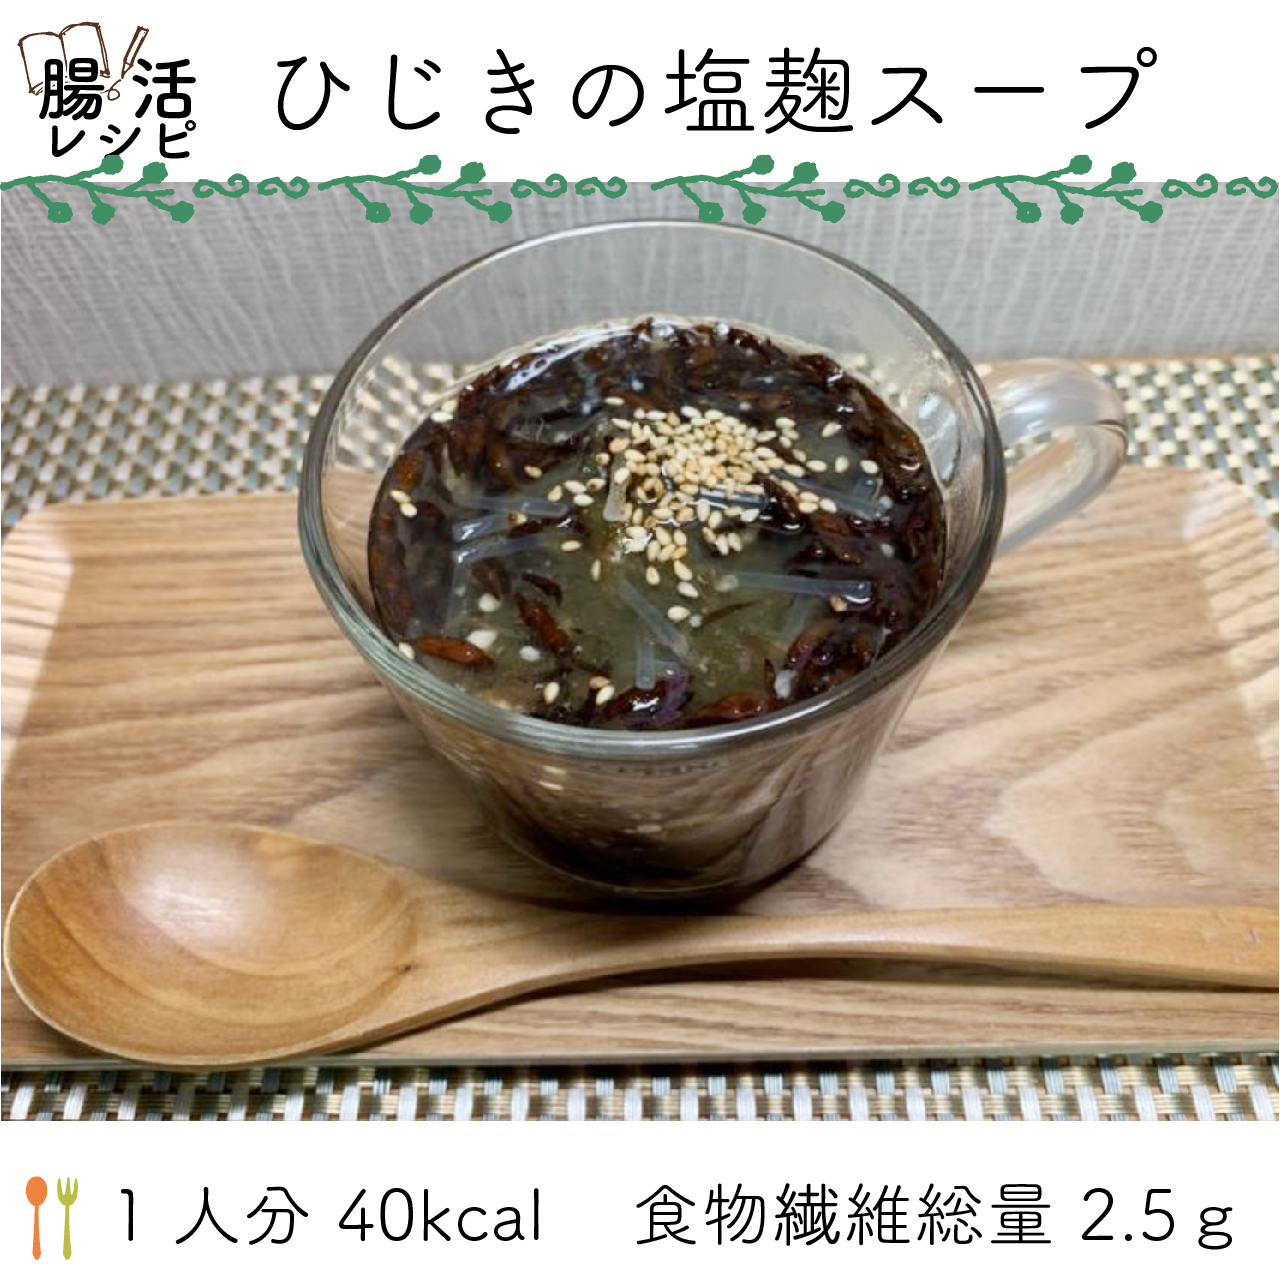 腸活レシピ   ひじきの塩麹スープ  1 人分 40kcal    食物繊維総量 2.5ｇ 